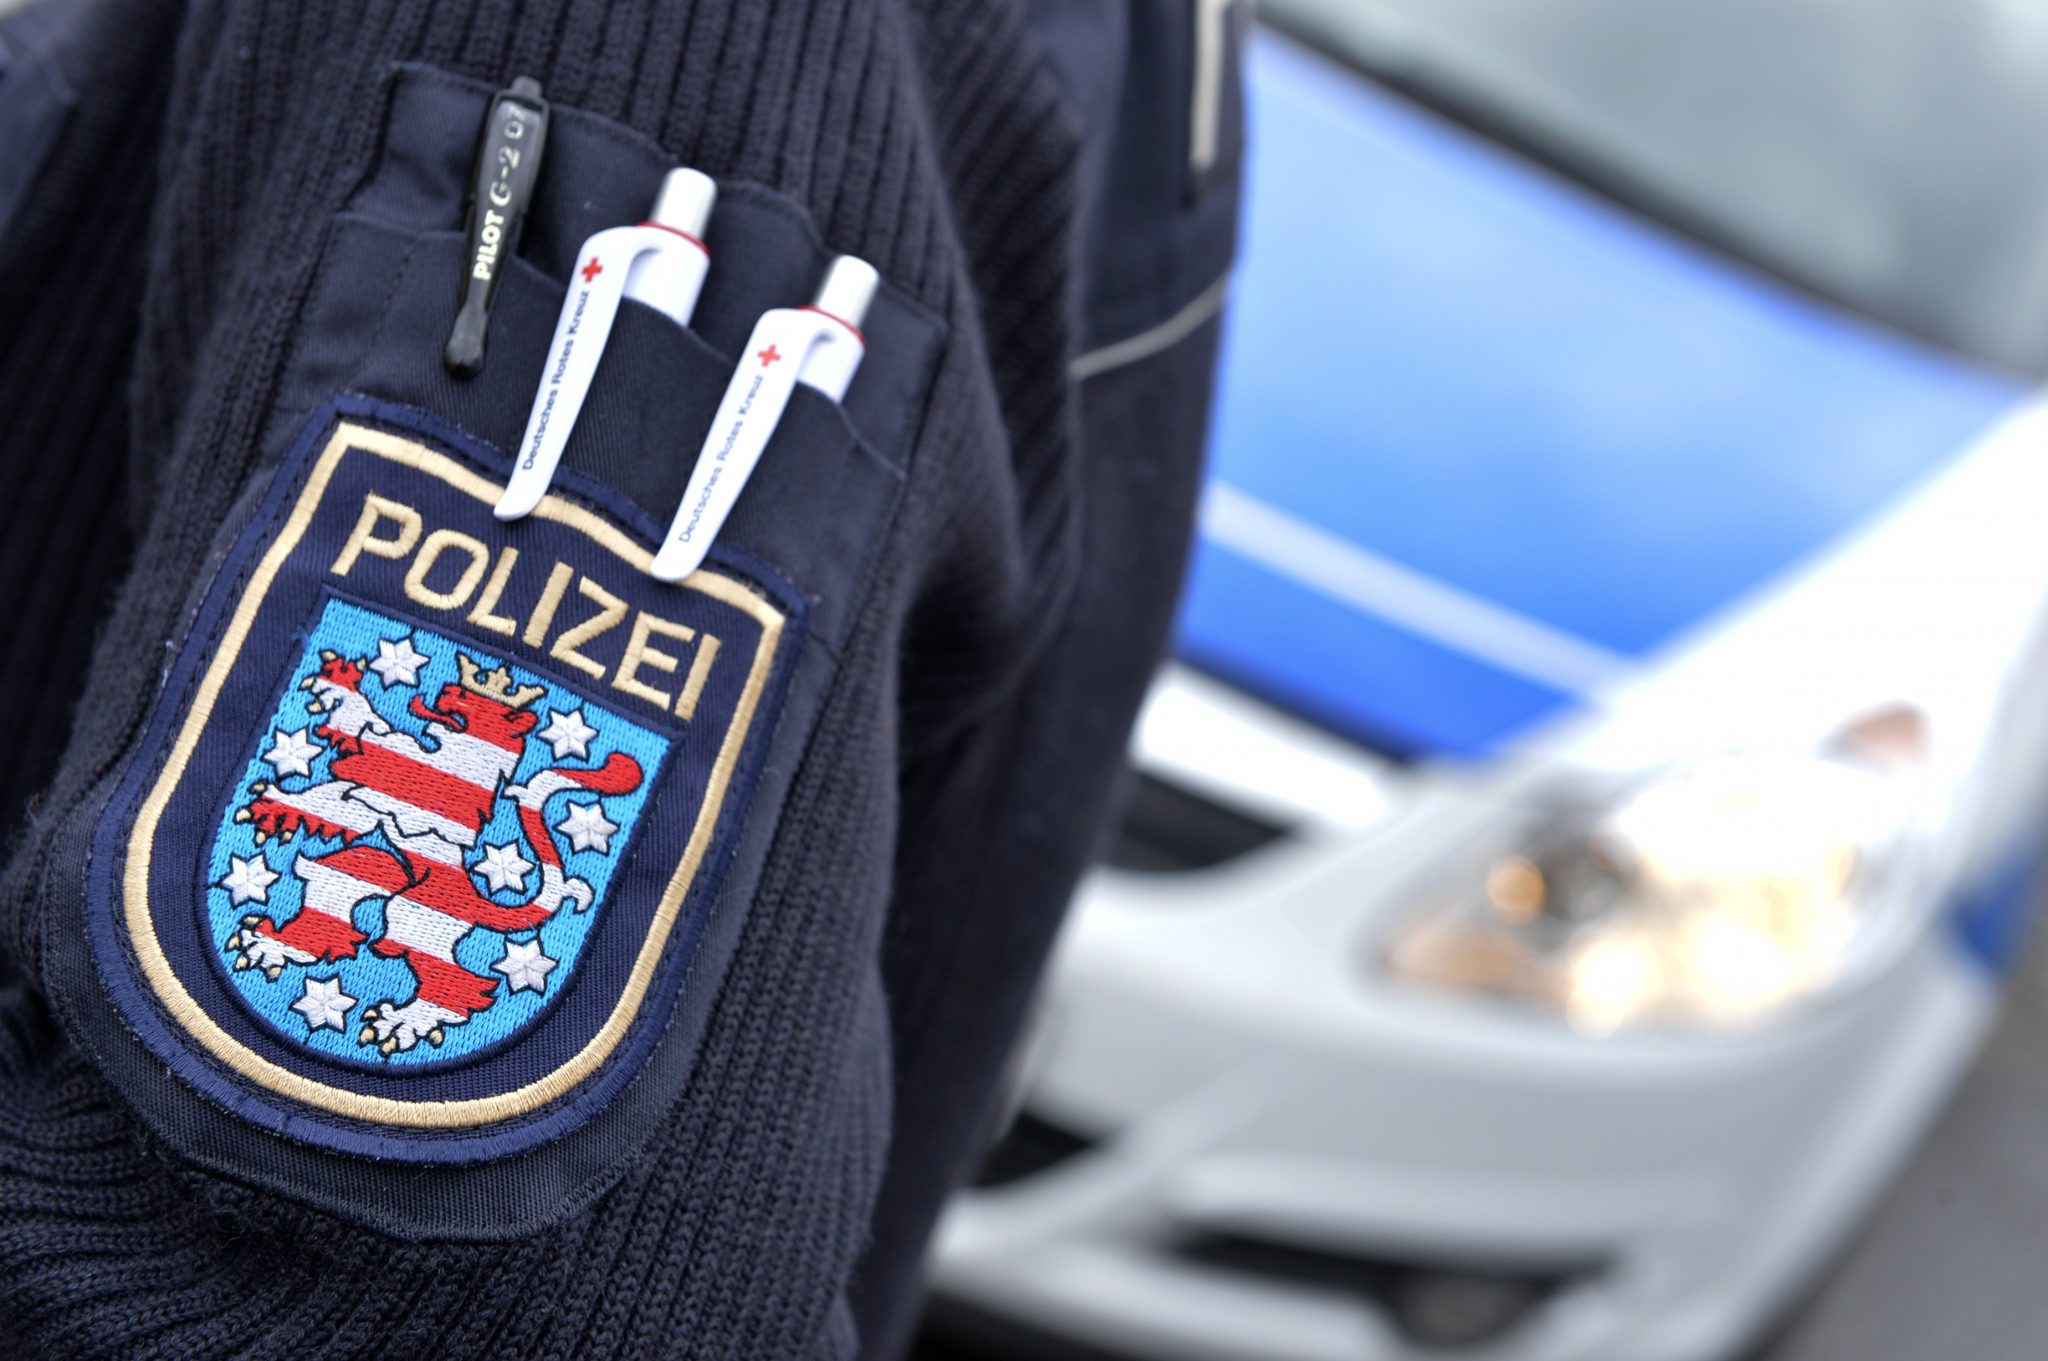 Thüringens Wappen auf einer Polizeiuniform Foto: picture alliance/Volkmar Heinz/dpa-Zentralbild/ZB